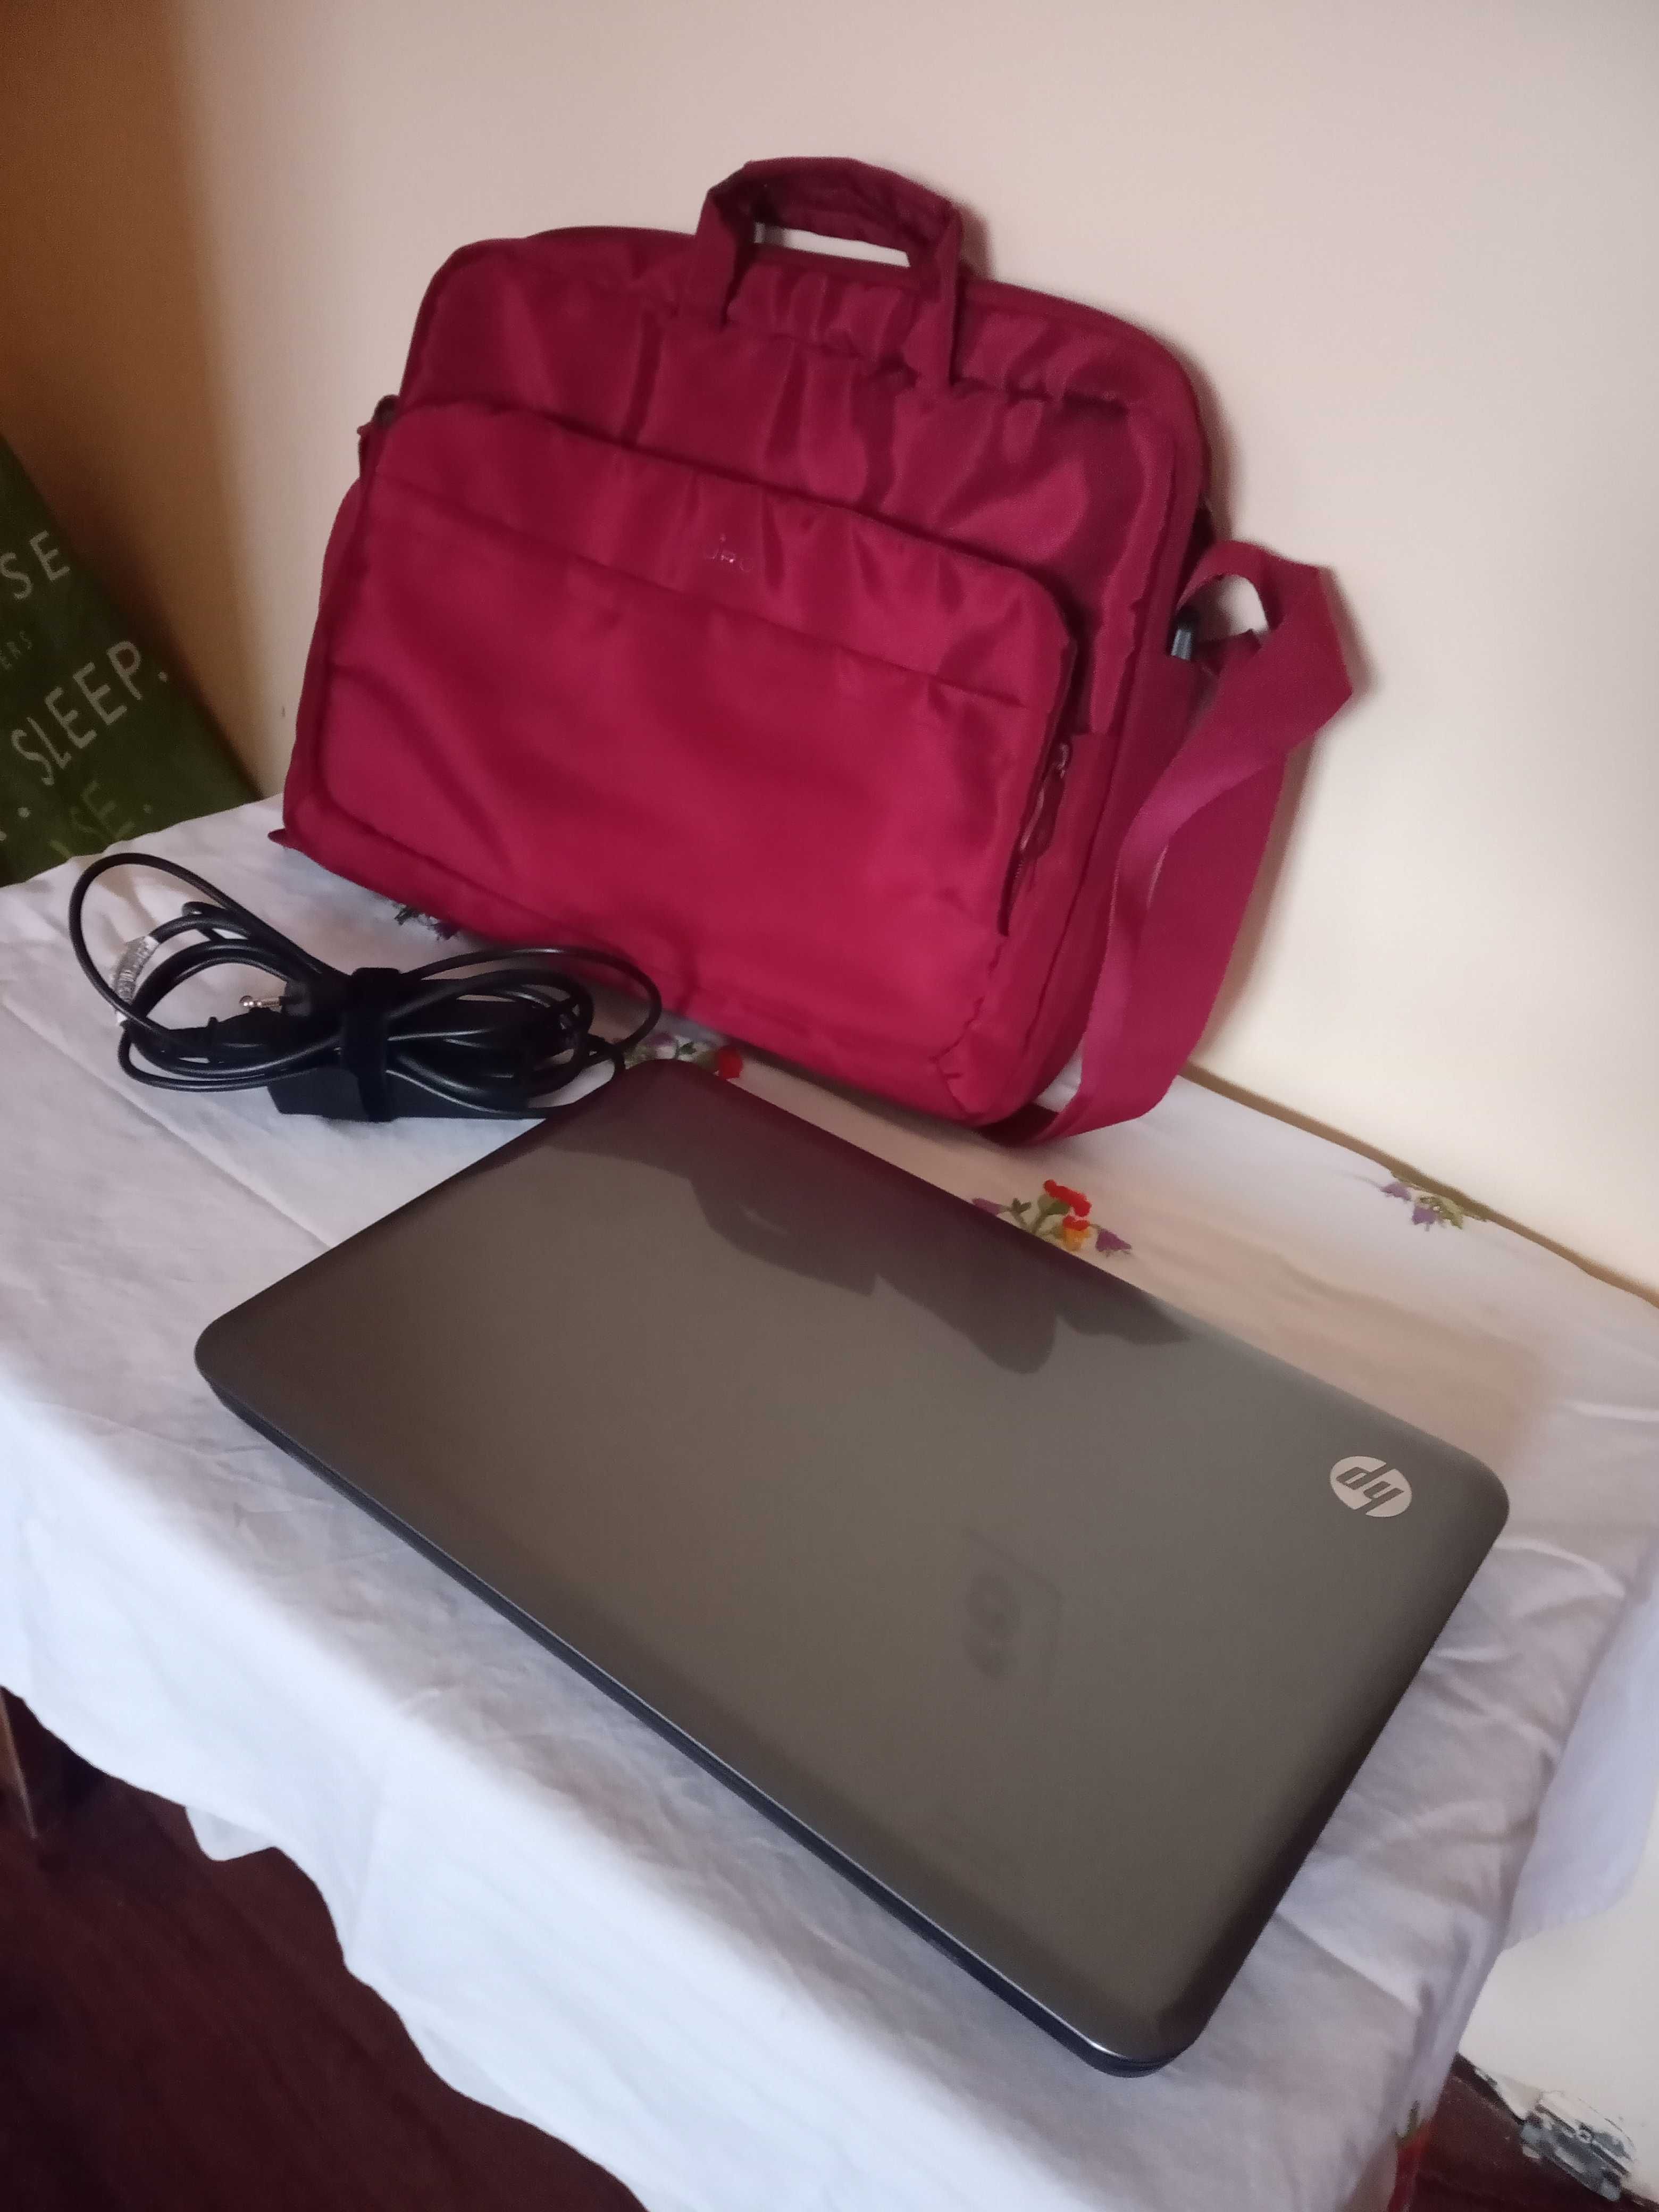 Laptop HP Pavilion G6